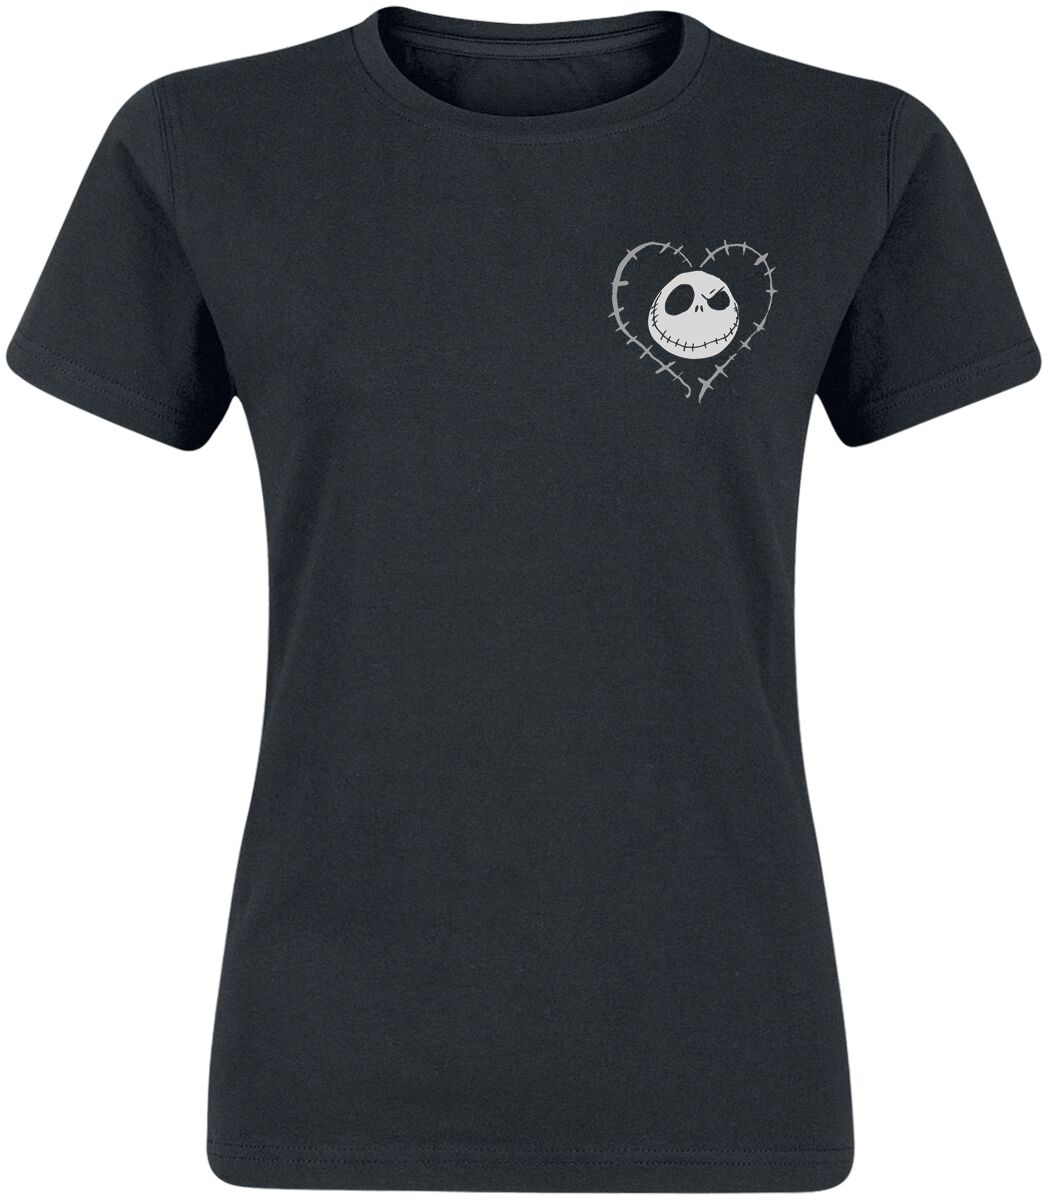 The Nightmare Before Christmas T-Shirt - Stitched Heart - S bis XL - für Damen - Größe XL - schwarz  - EMP exklusives Merchandise!